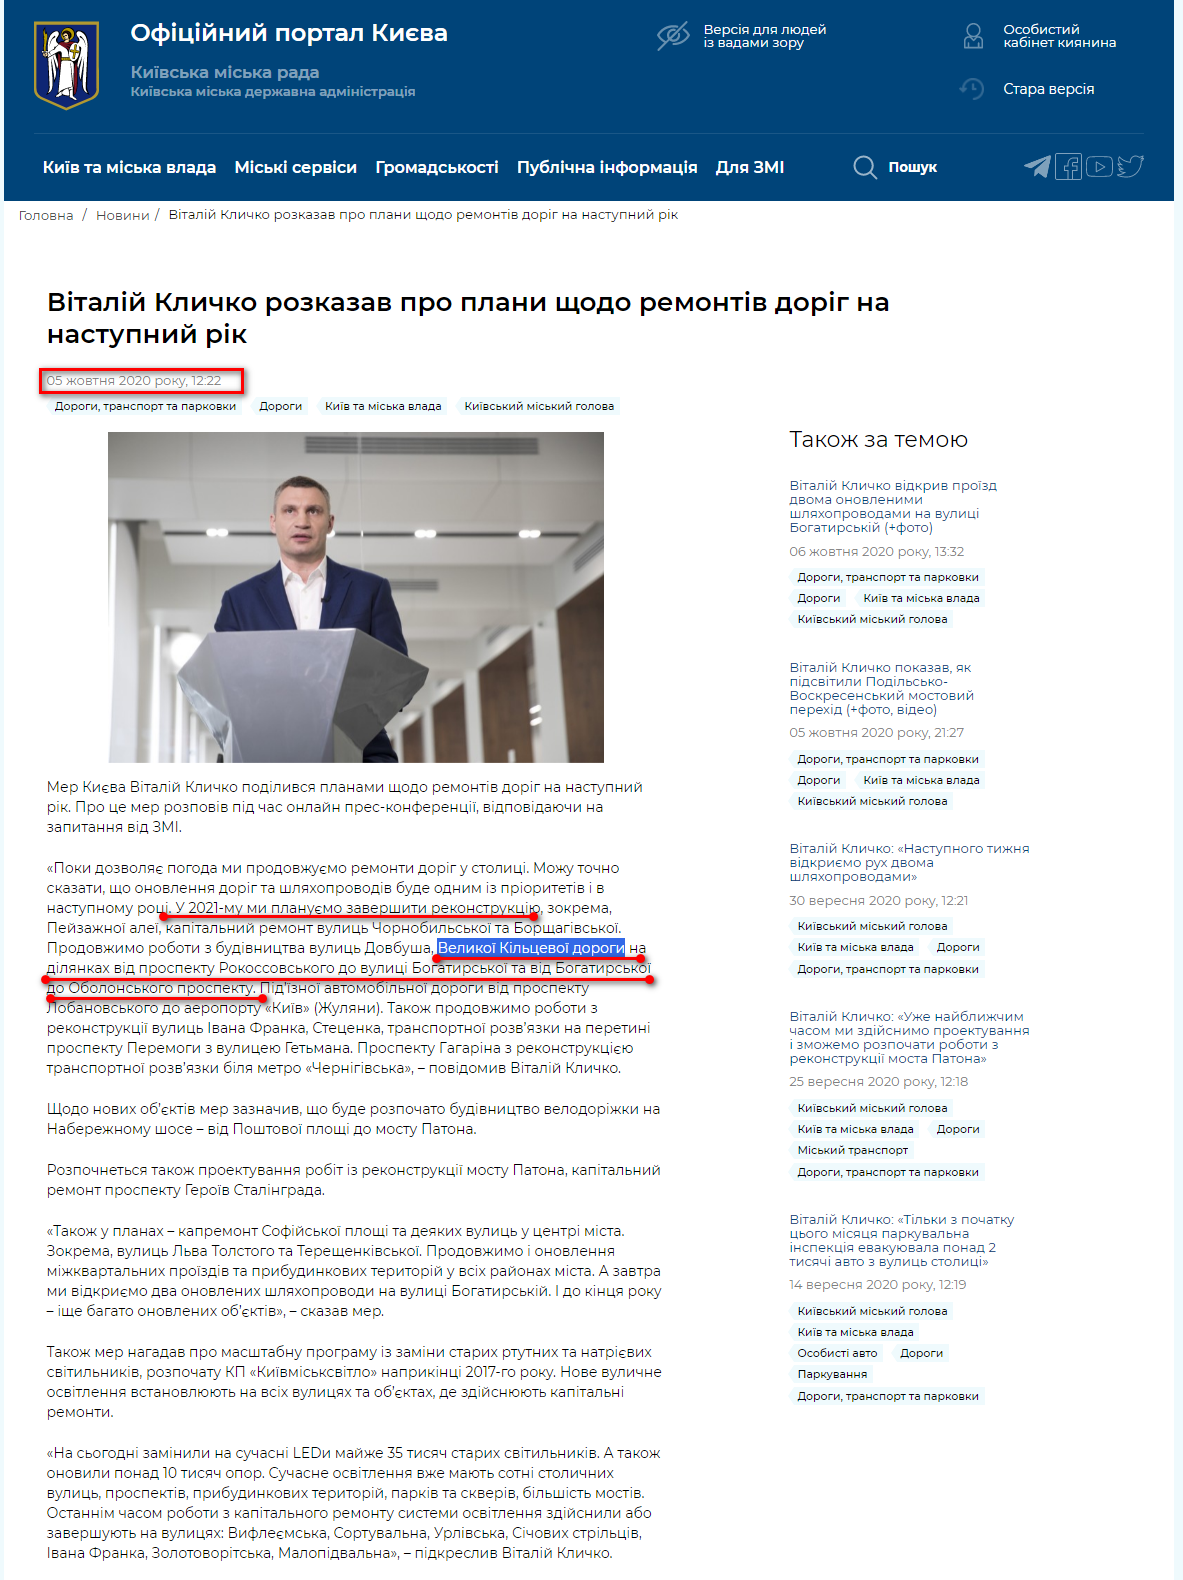 https://kyivcity.gov.ua/news/vitaliy_klichko_rozkazav_pro_plani_schodo_remontiv_dorig_na_nastupniy_rik/